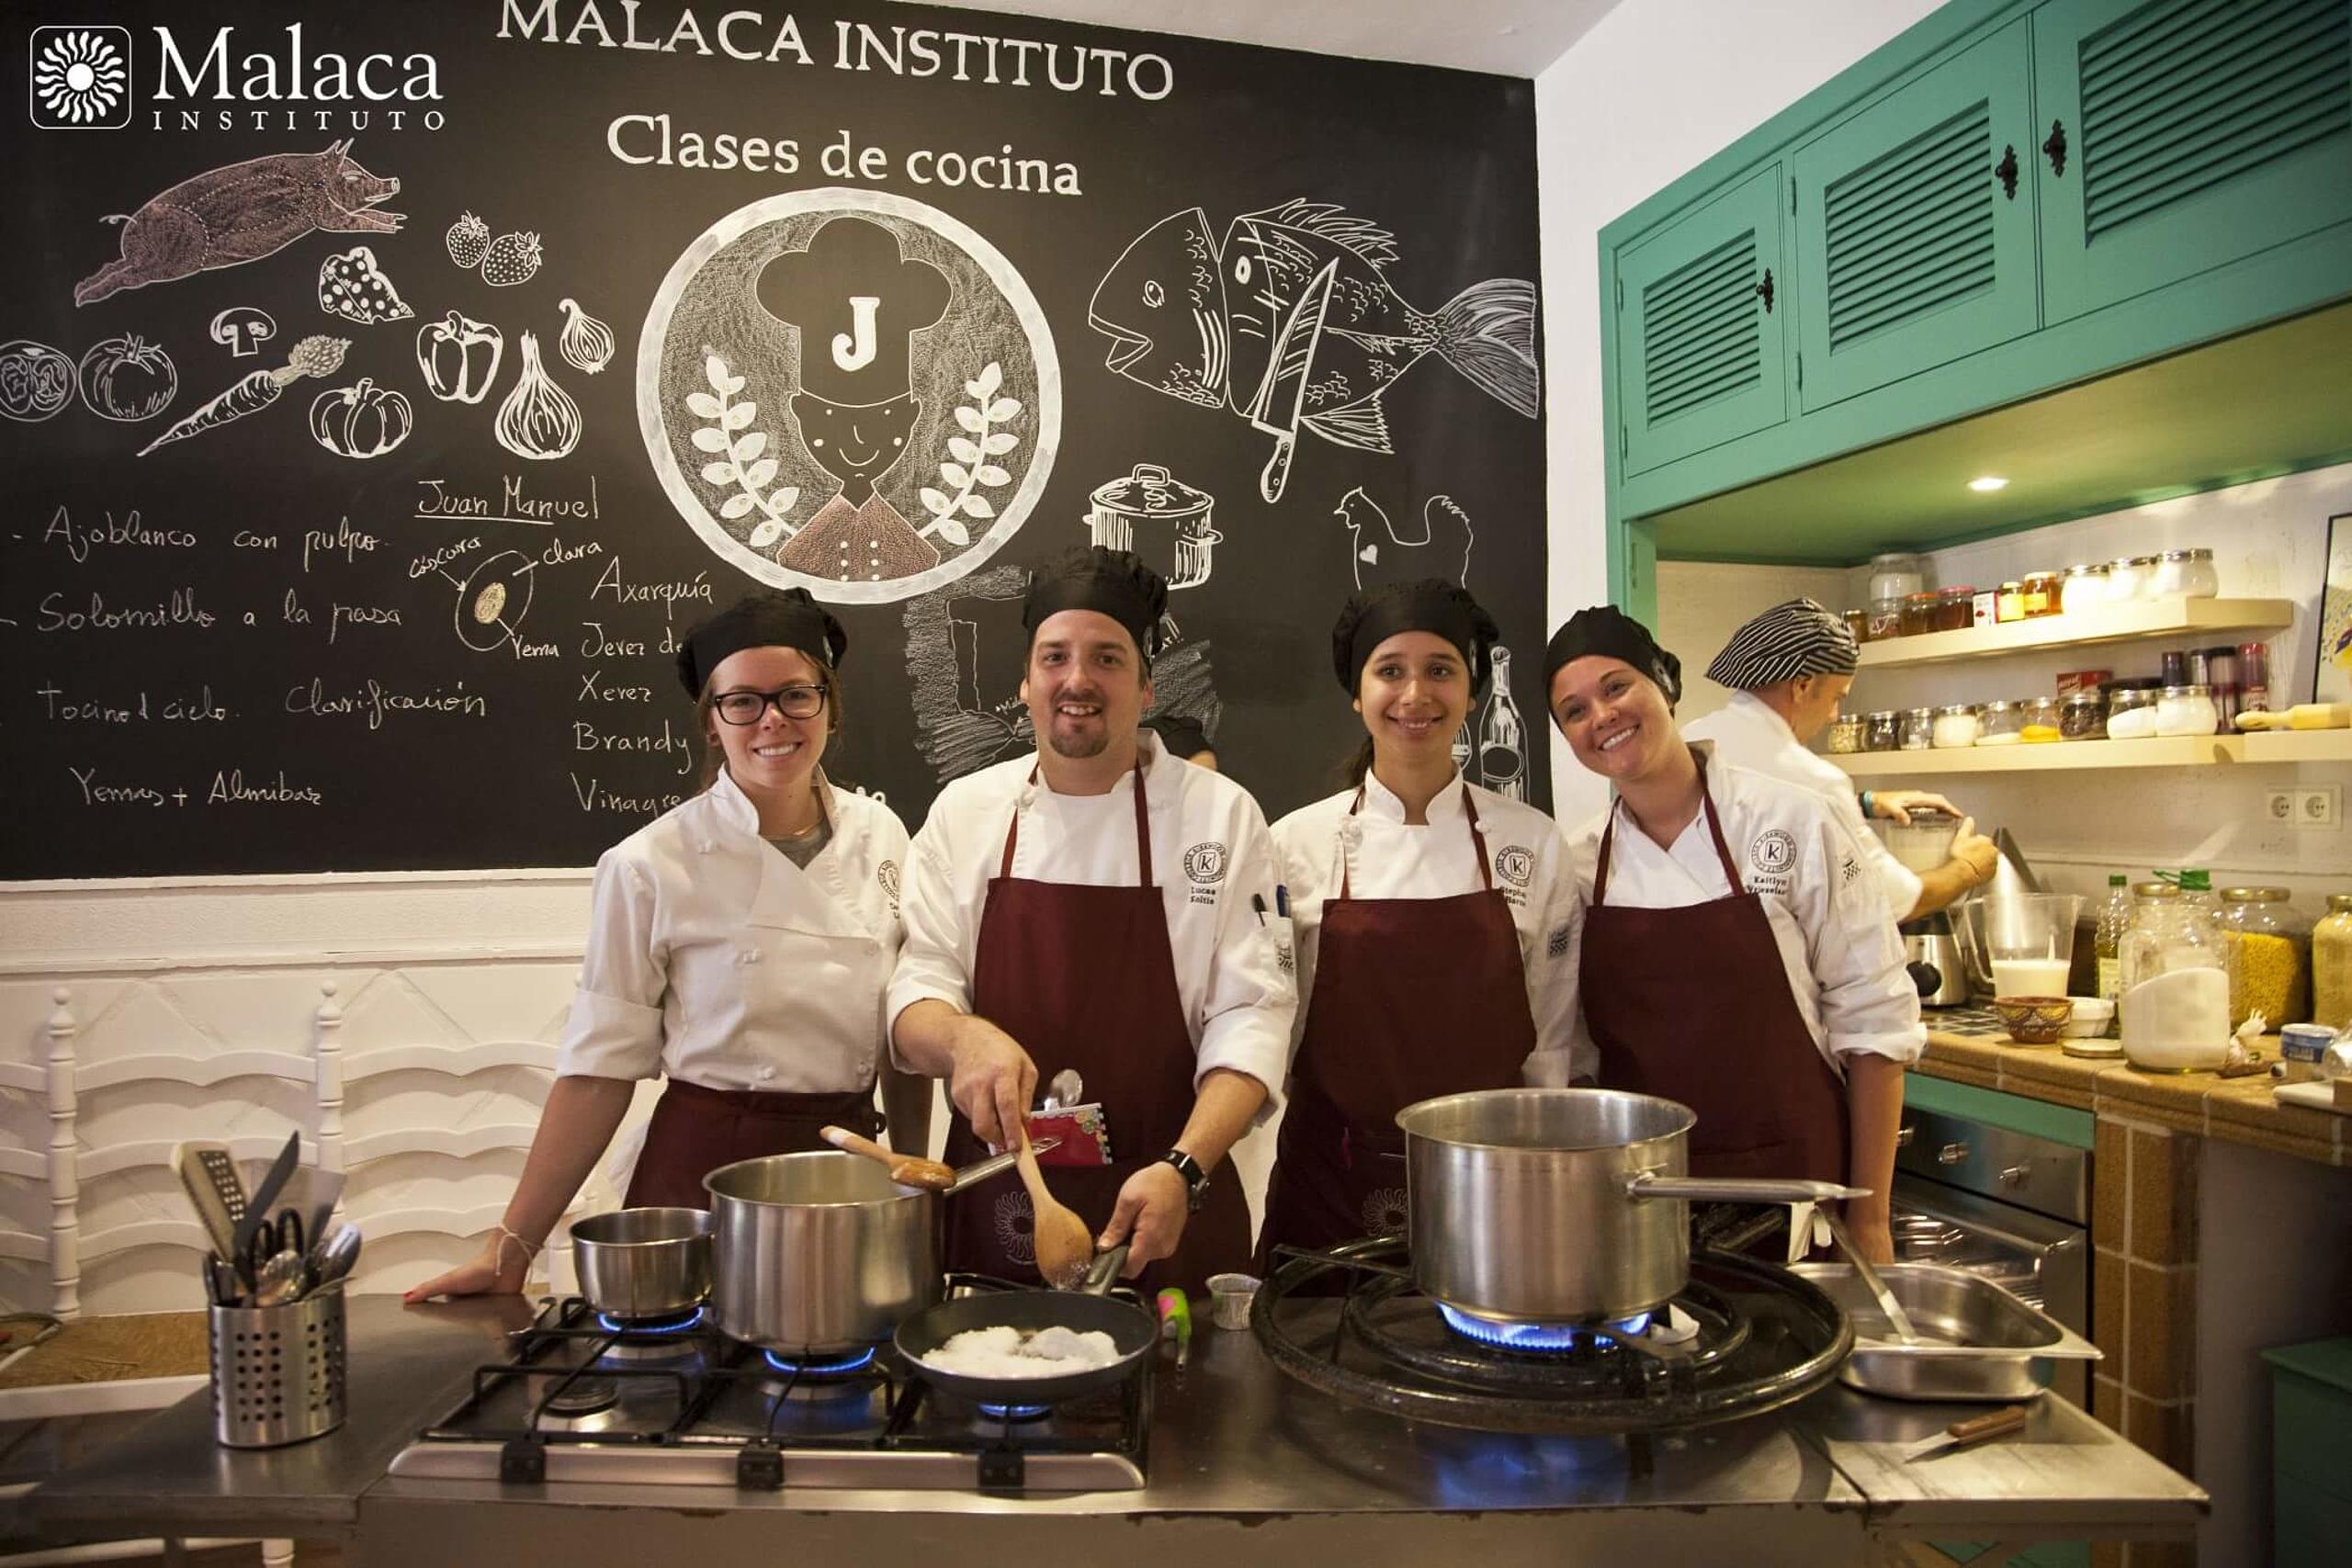 Hier finden Sie Erfahrungsberichte zu Malaca Instituto Málaga.